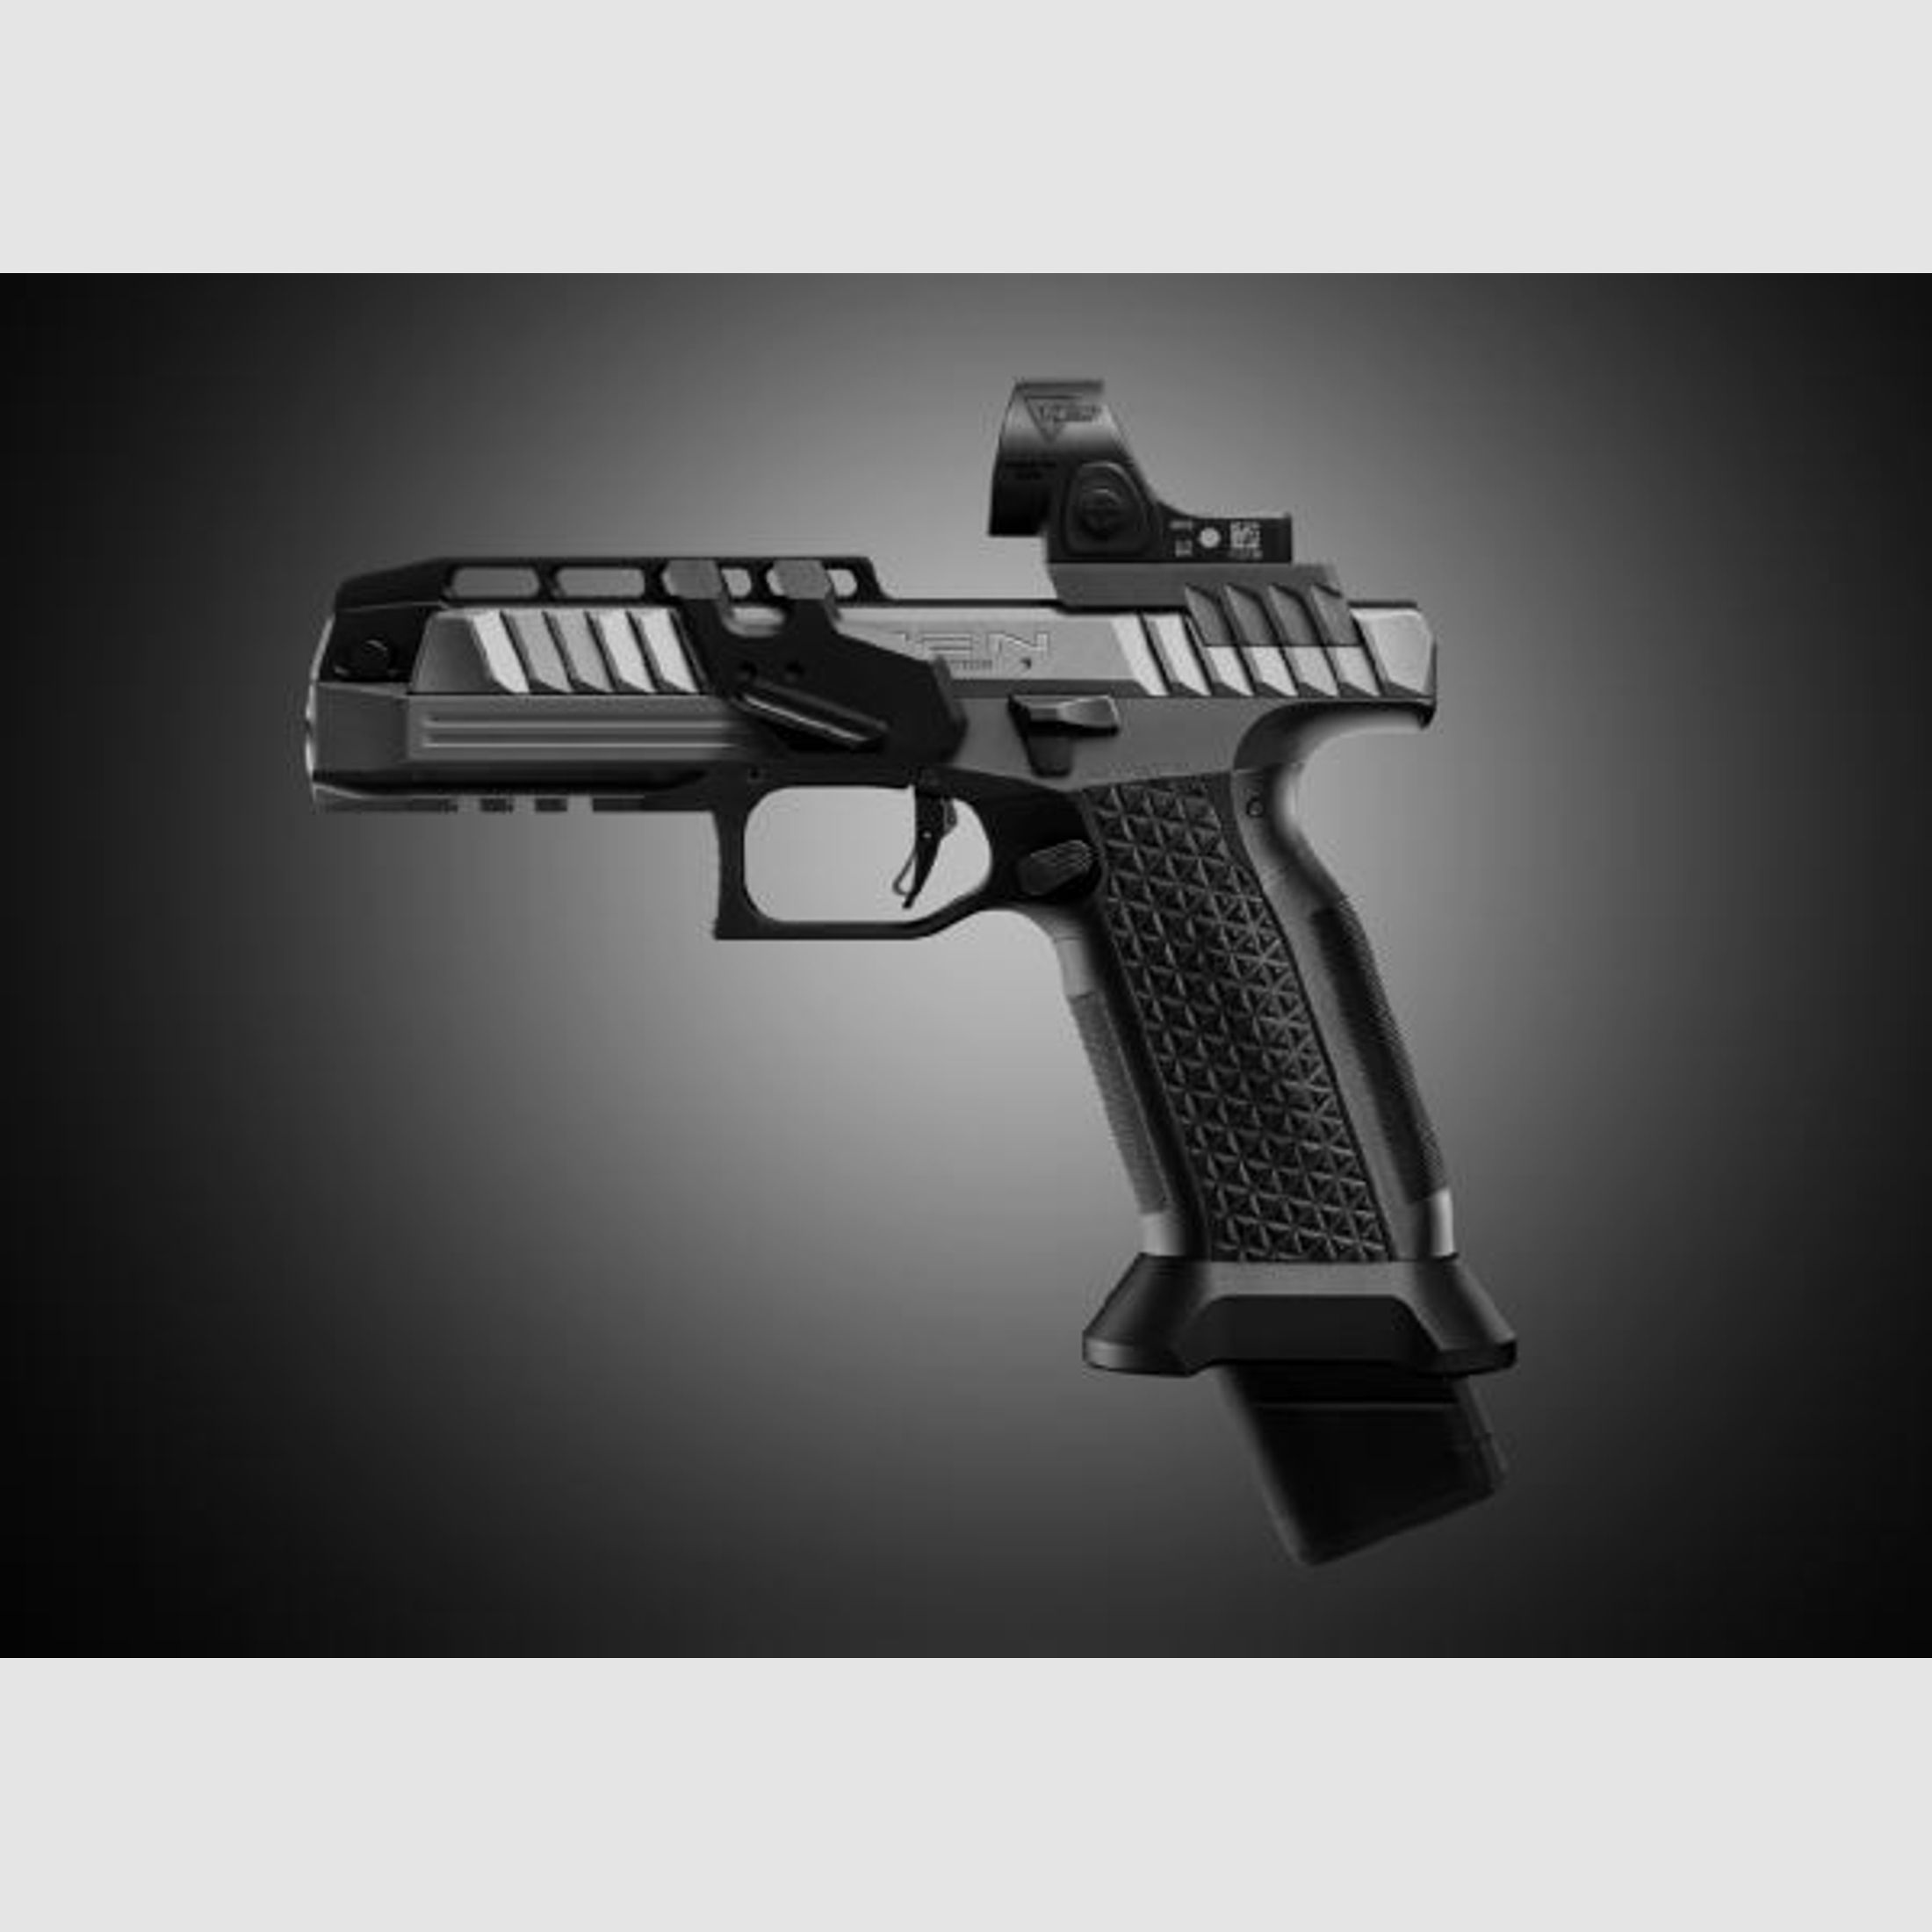 Laugo Arms Pistole Mod. ALIEN Creator Ltd. OpticS 9mmLuger  Grey/Black